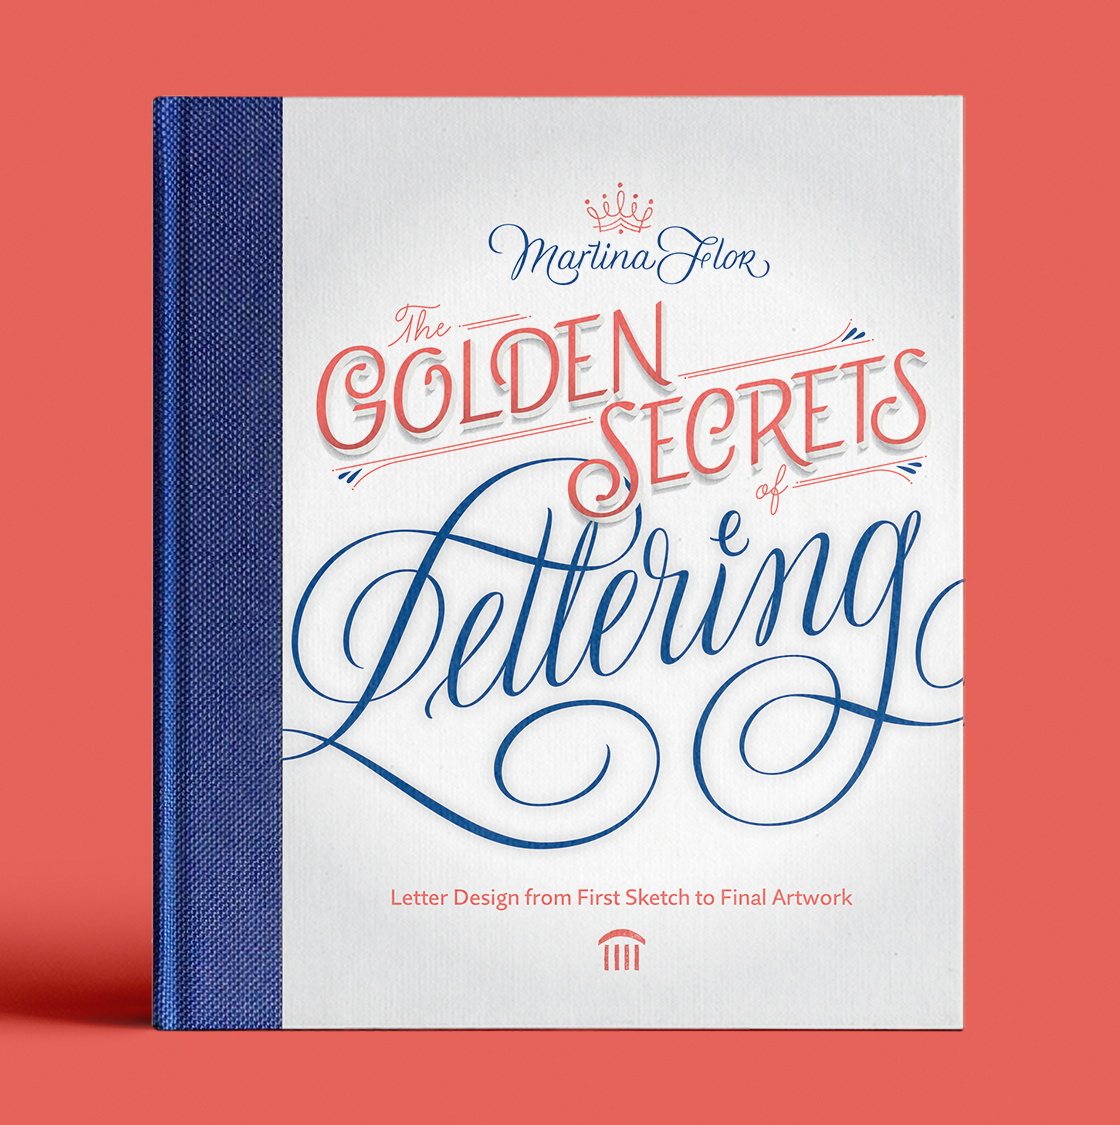 The Golden Secrets of Lettering Martina Flor